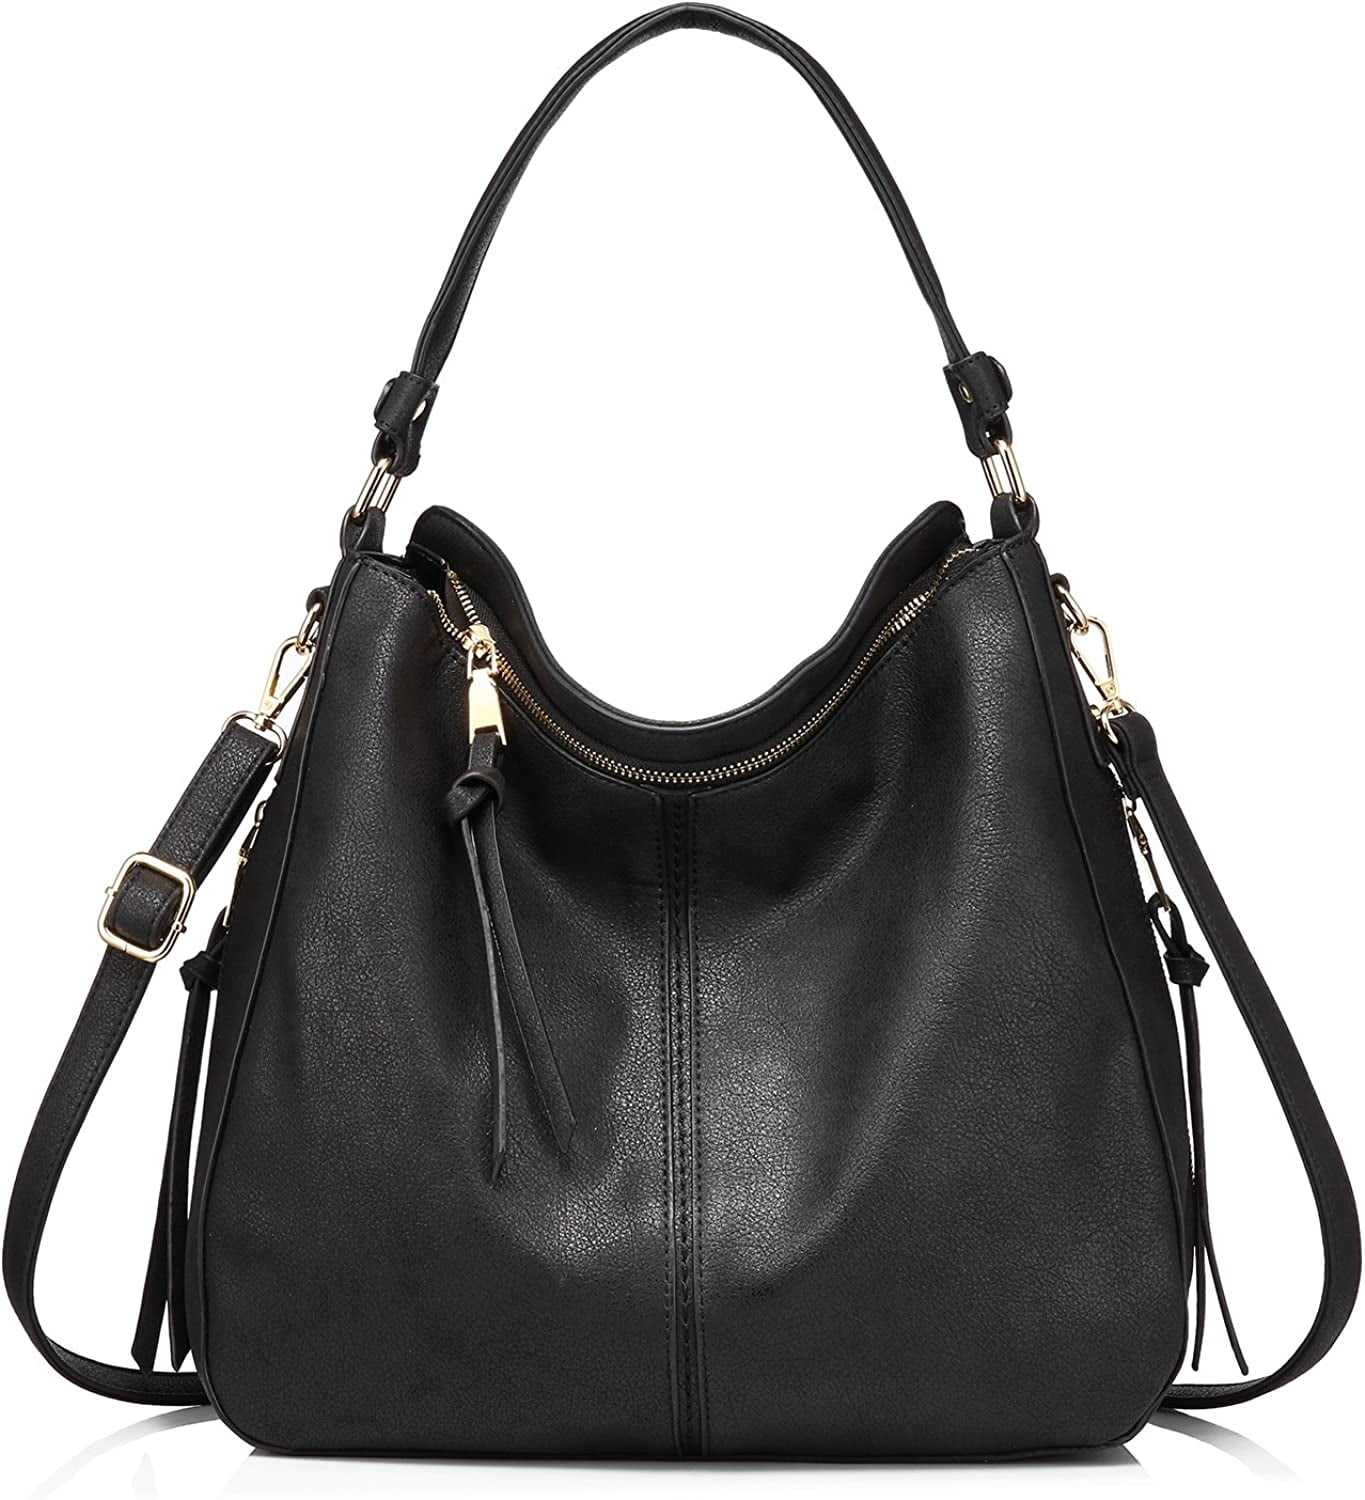 Michael Kors Charlotte Lady Large Leather Shoulder Bag Handbag Purse Tote  Camel | eBay